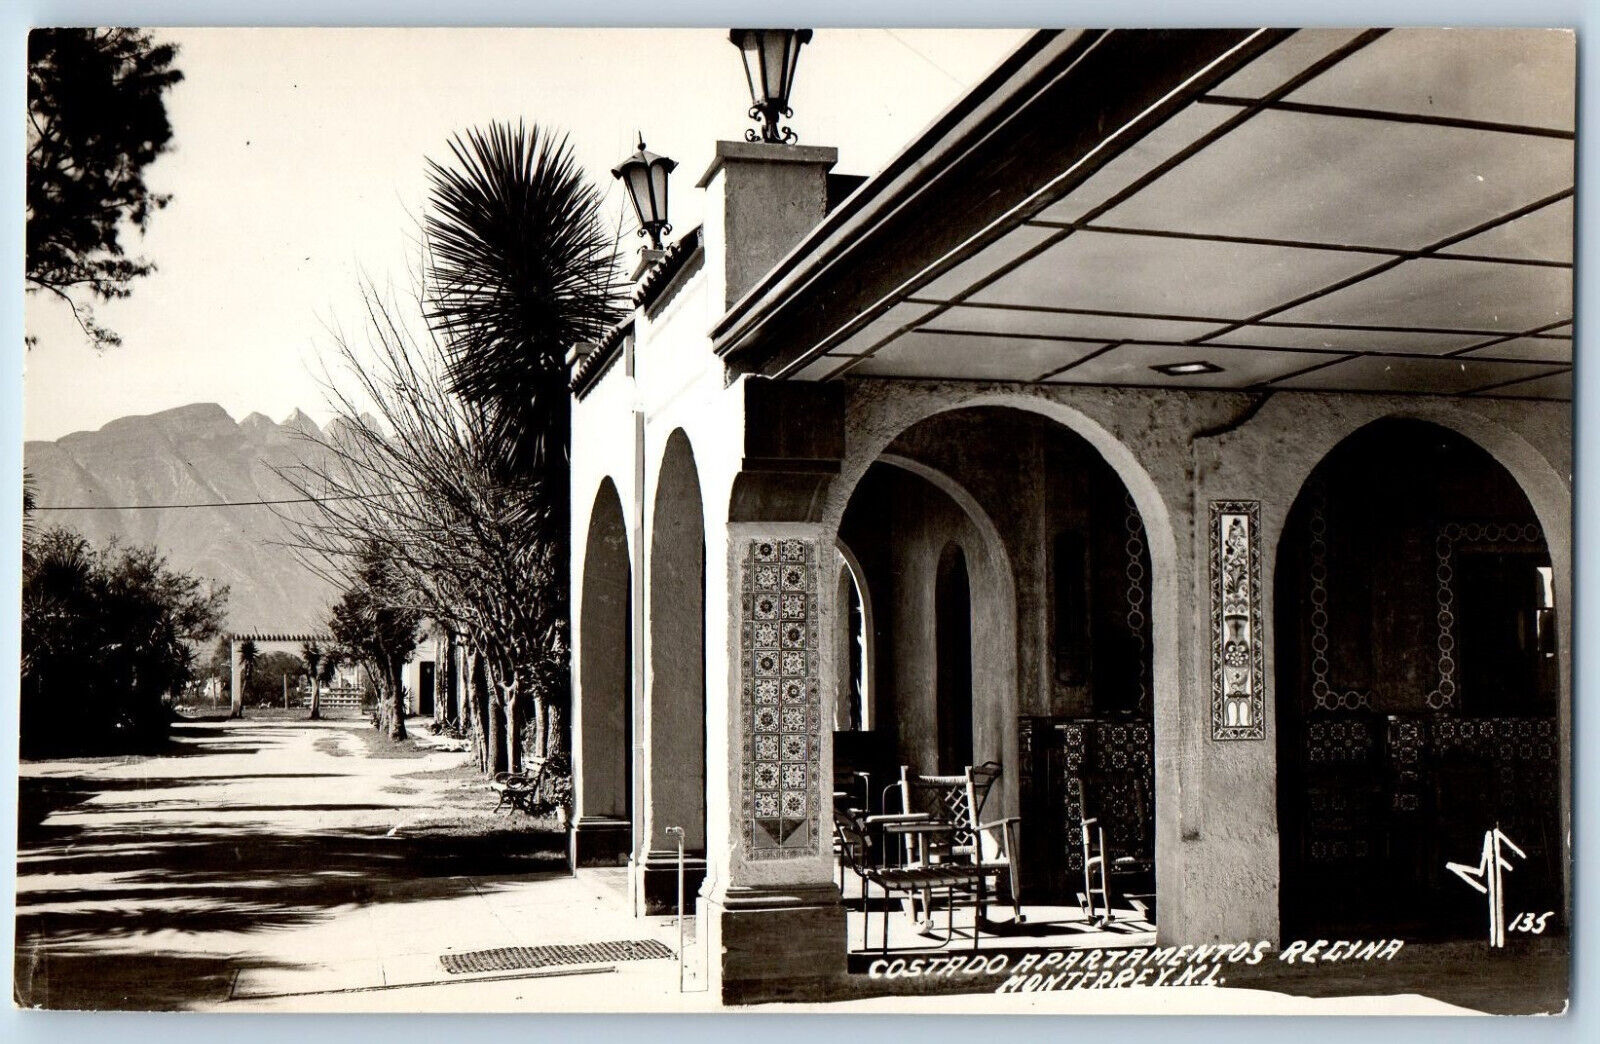 Monterrey Mexico Postcard Costado Apartamentos Regina c1930\'s RPPC Photo